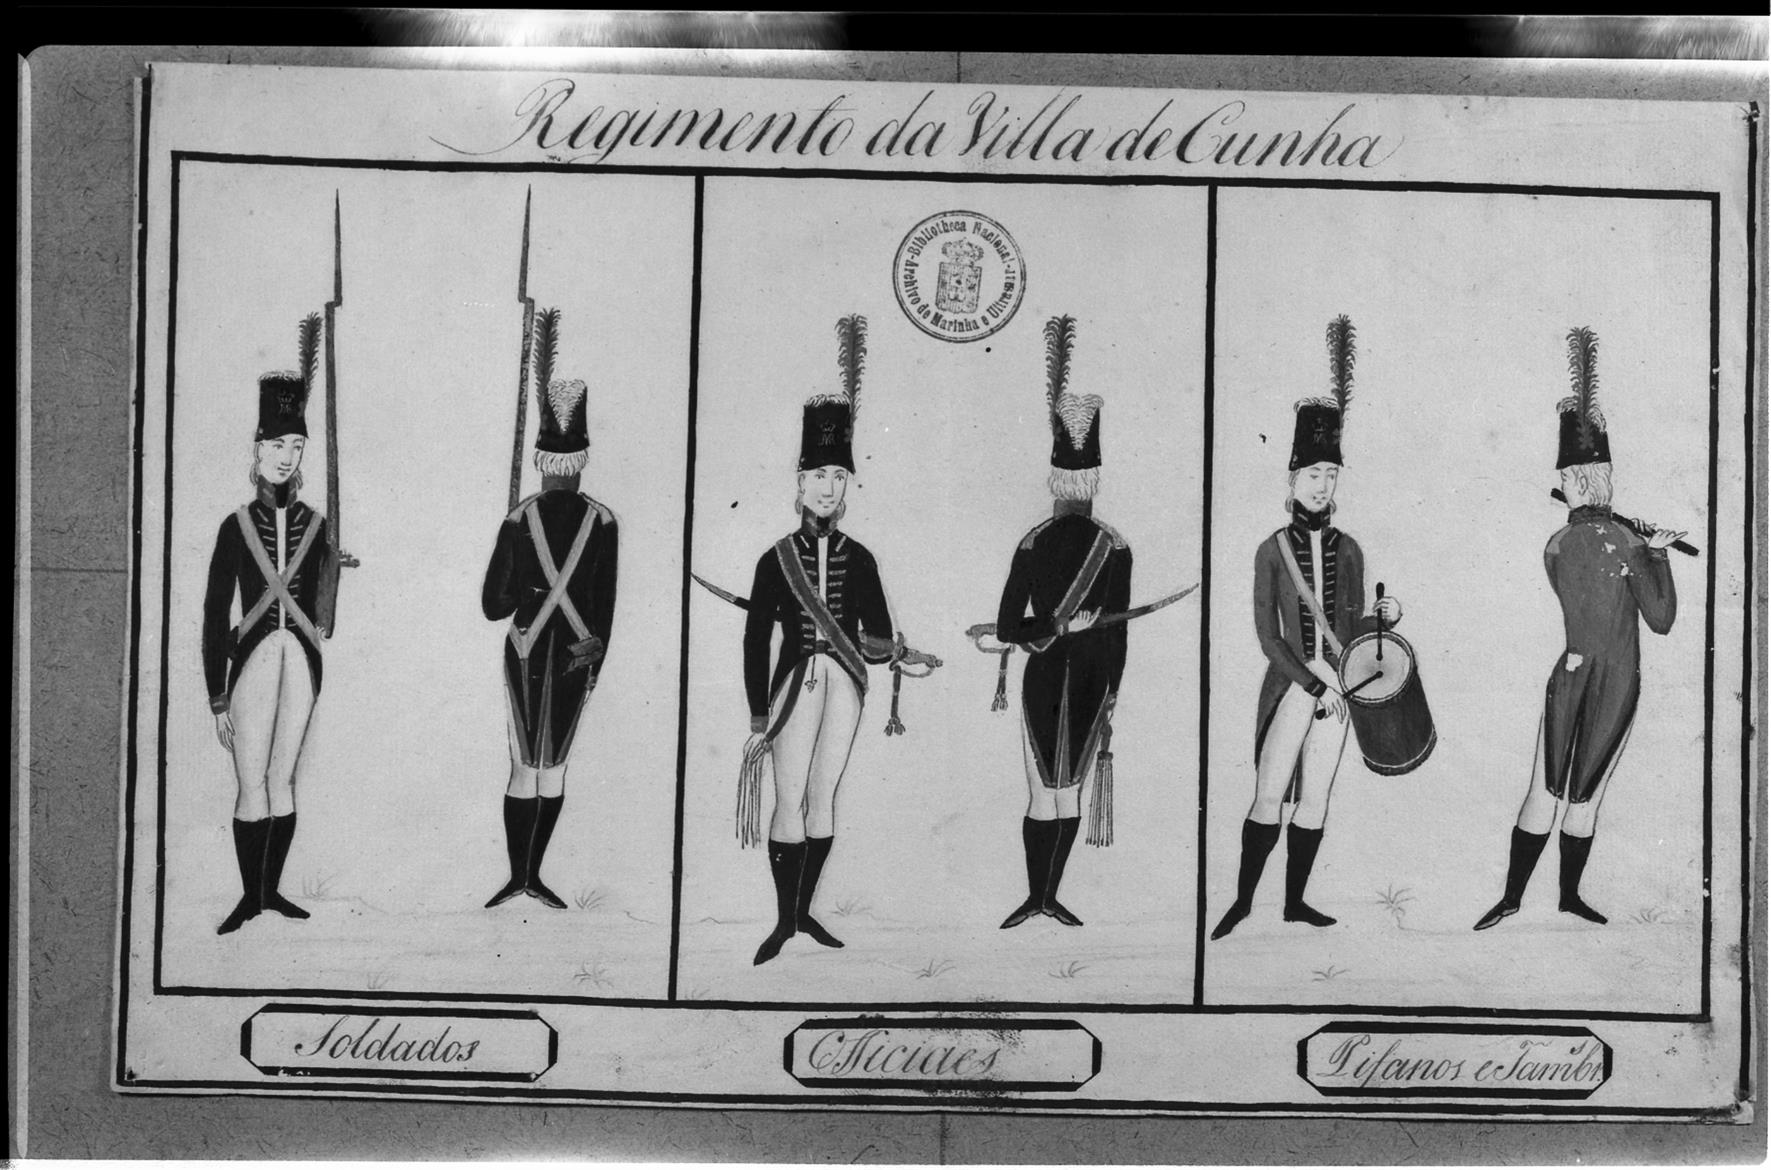 Exposição Histórico-Militar : uniformes do Regimento de Vila de Cunha : Brasil : c. 1806